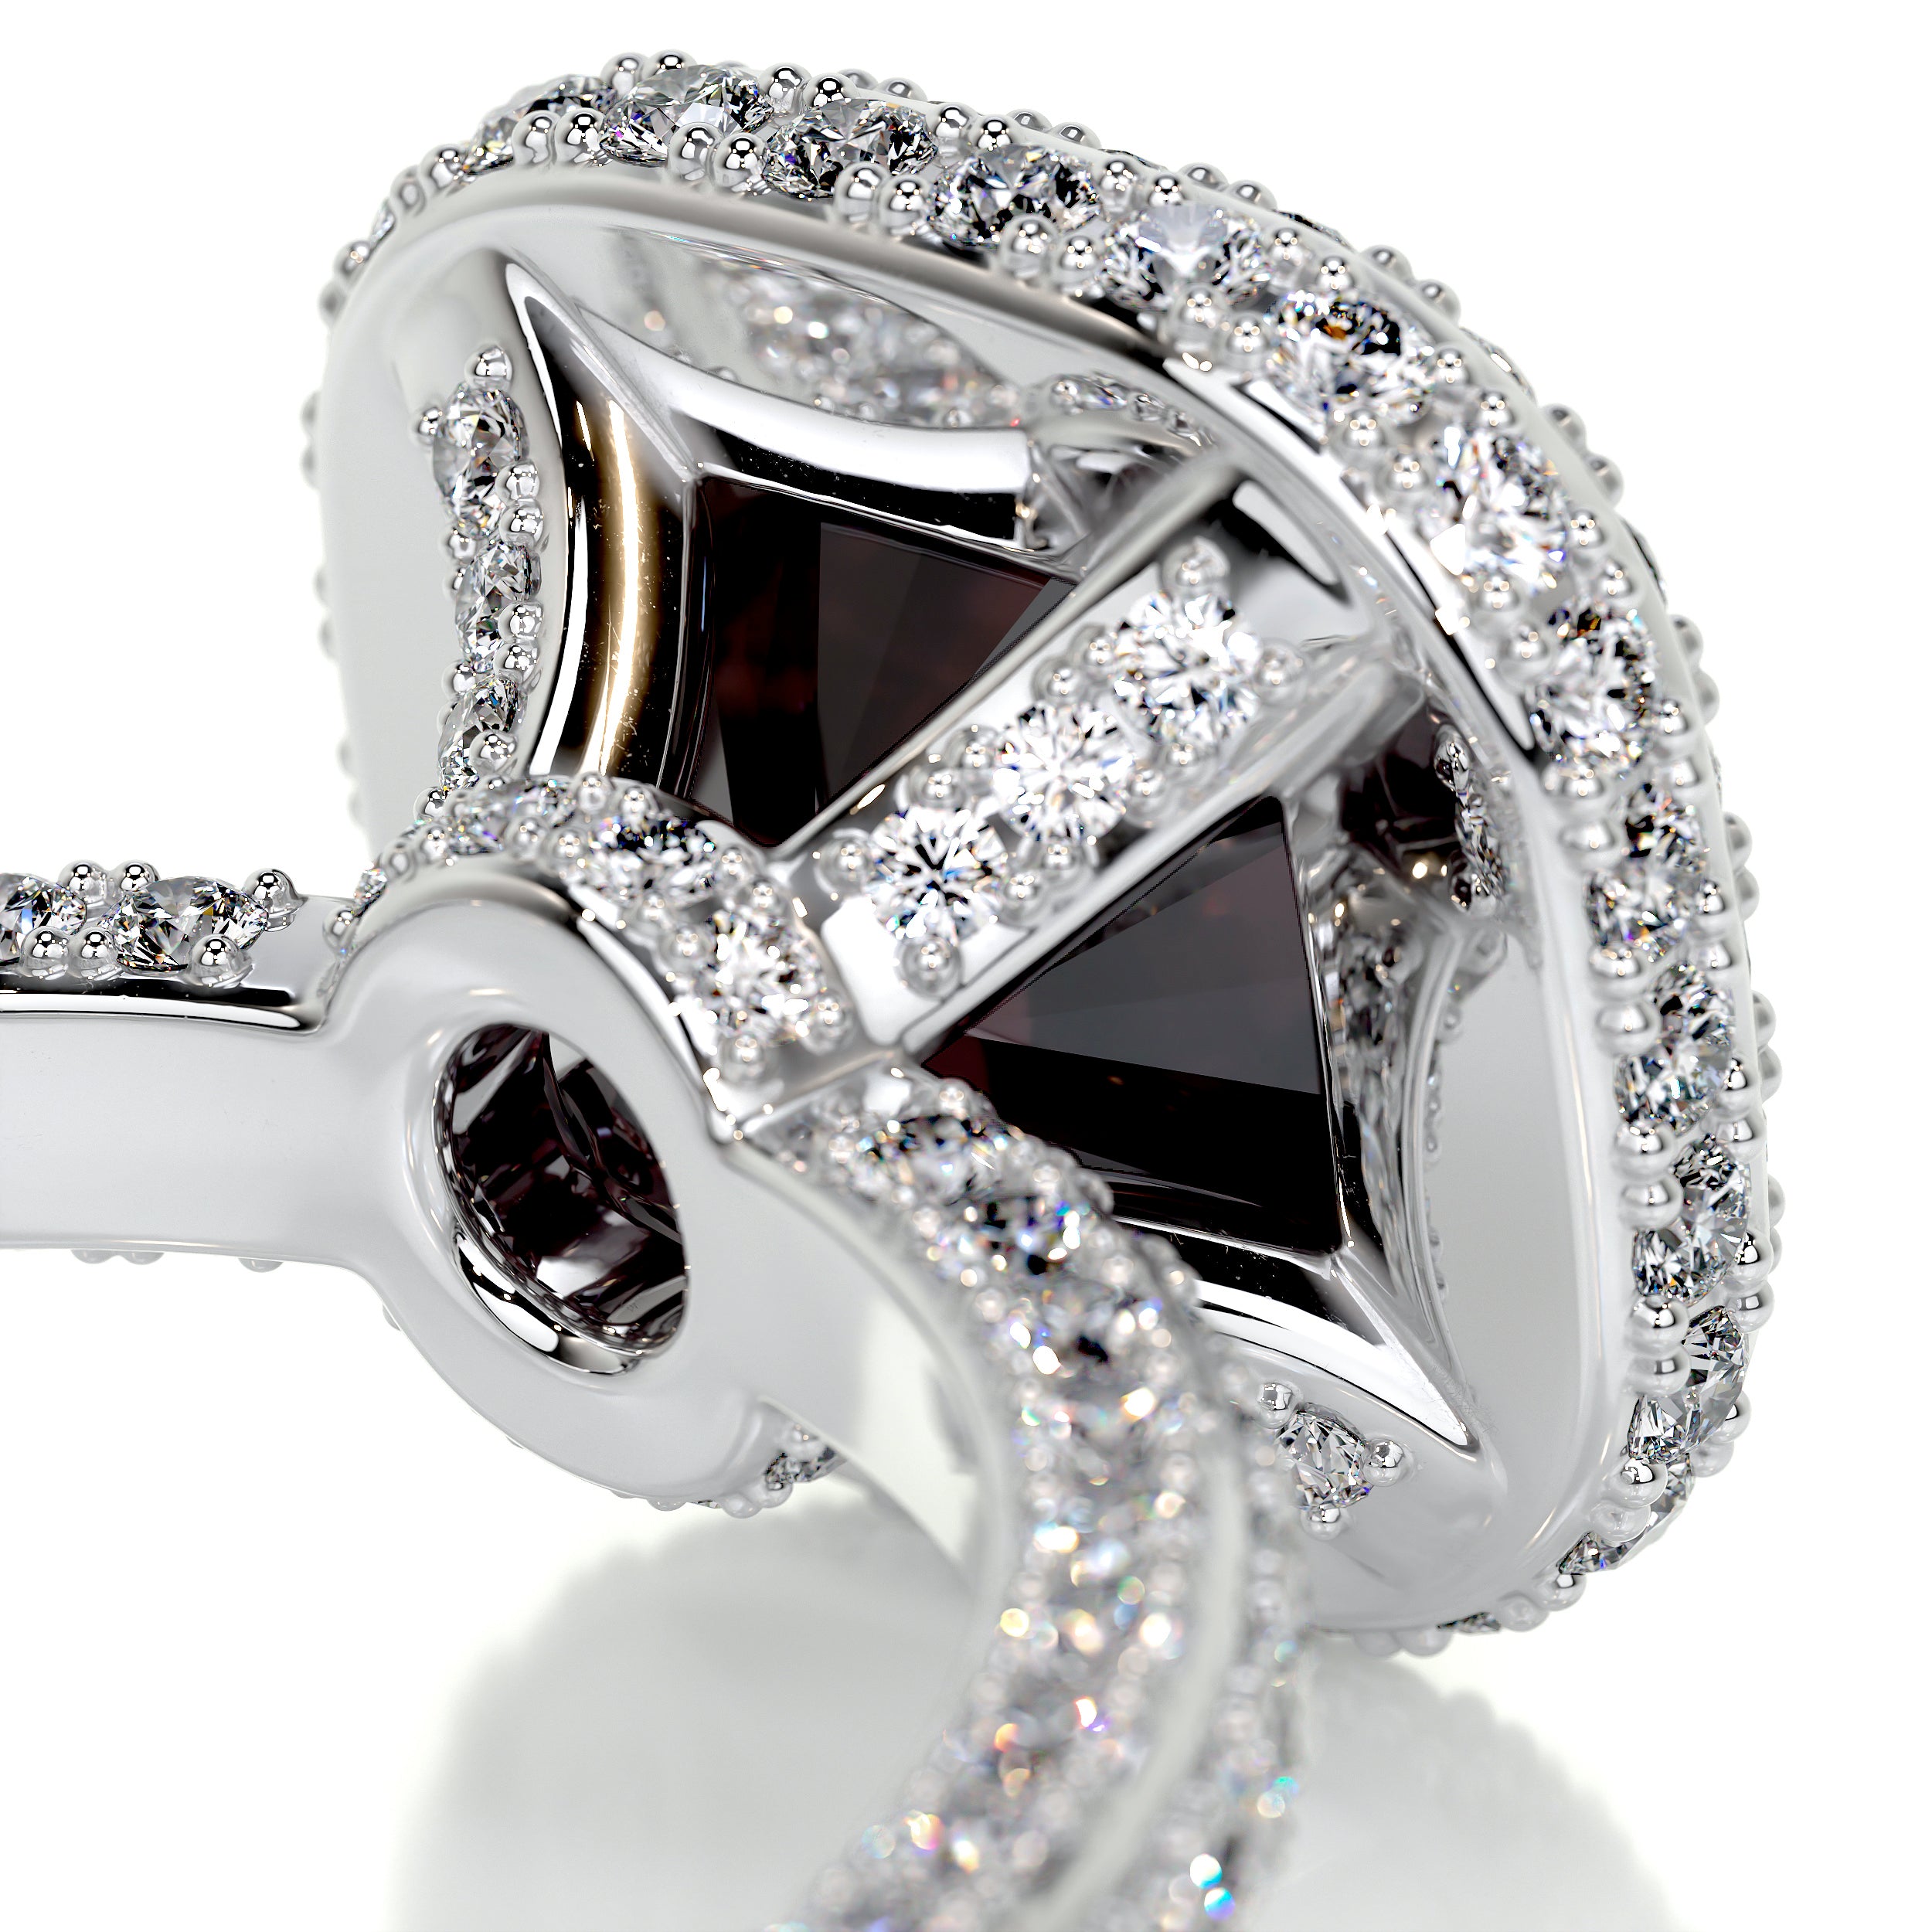 Kim Gemstone & Diamonds Ring   (4 Carat) -14K White Gold